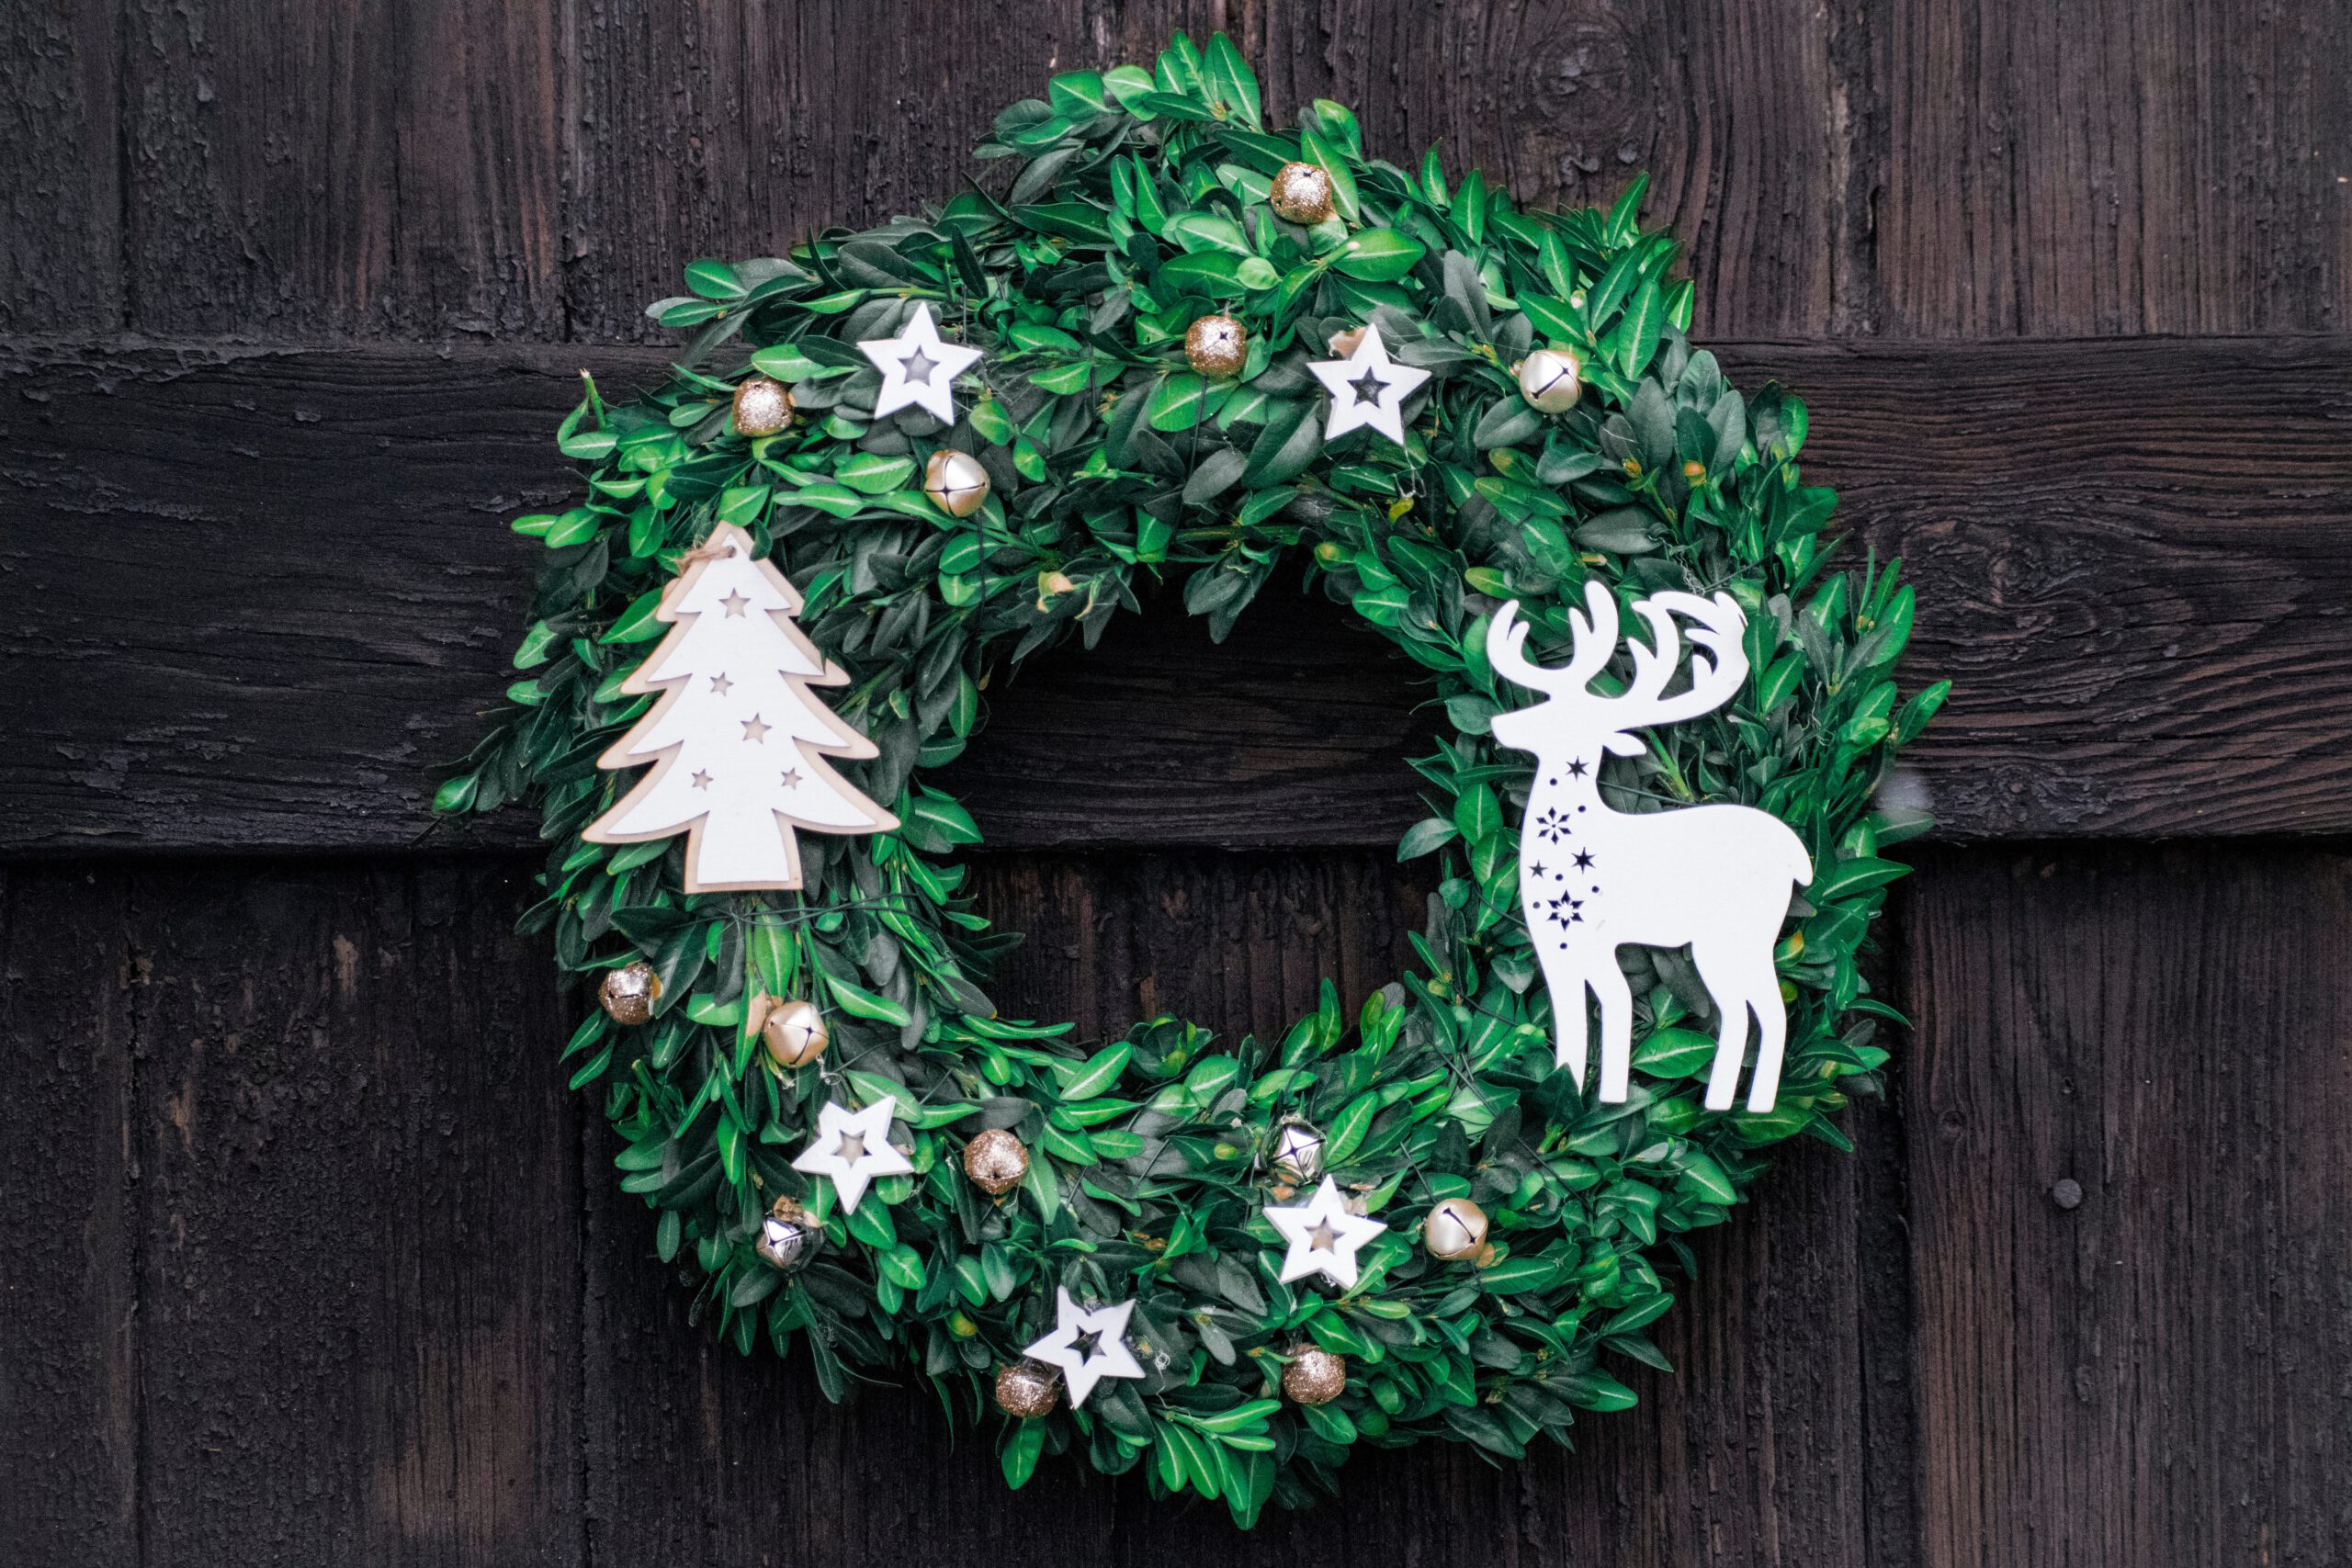 Zielony wieniec świąteczny z bukszpanu z przypiętymi dekoracjami wiszący na drzwiach